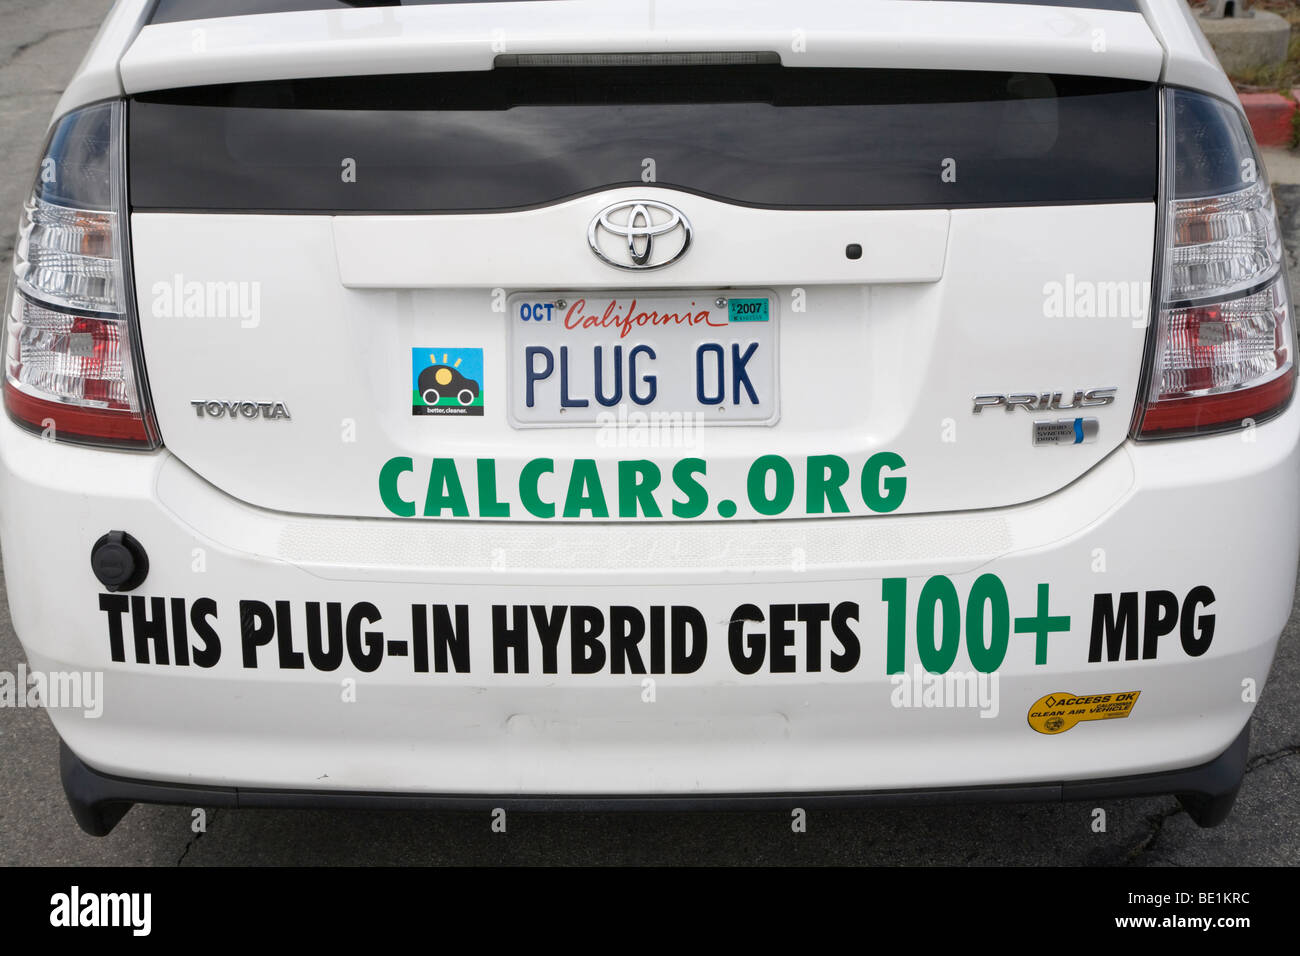 Plug-in Hybrid Toyota Prius Auto, Heckstoßstange mit "PLUG" OK "" Kfz-Kennzeichen und Aufkleber 100 + Meilen pro Gallone (MPG) zu fördern. Stockfoto